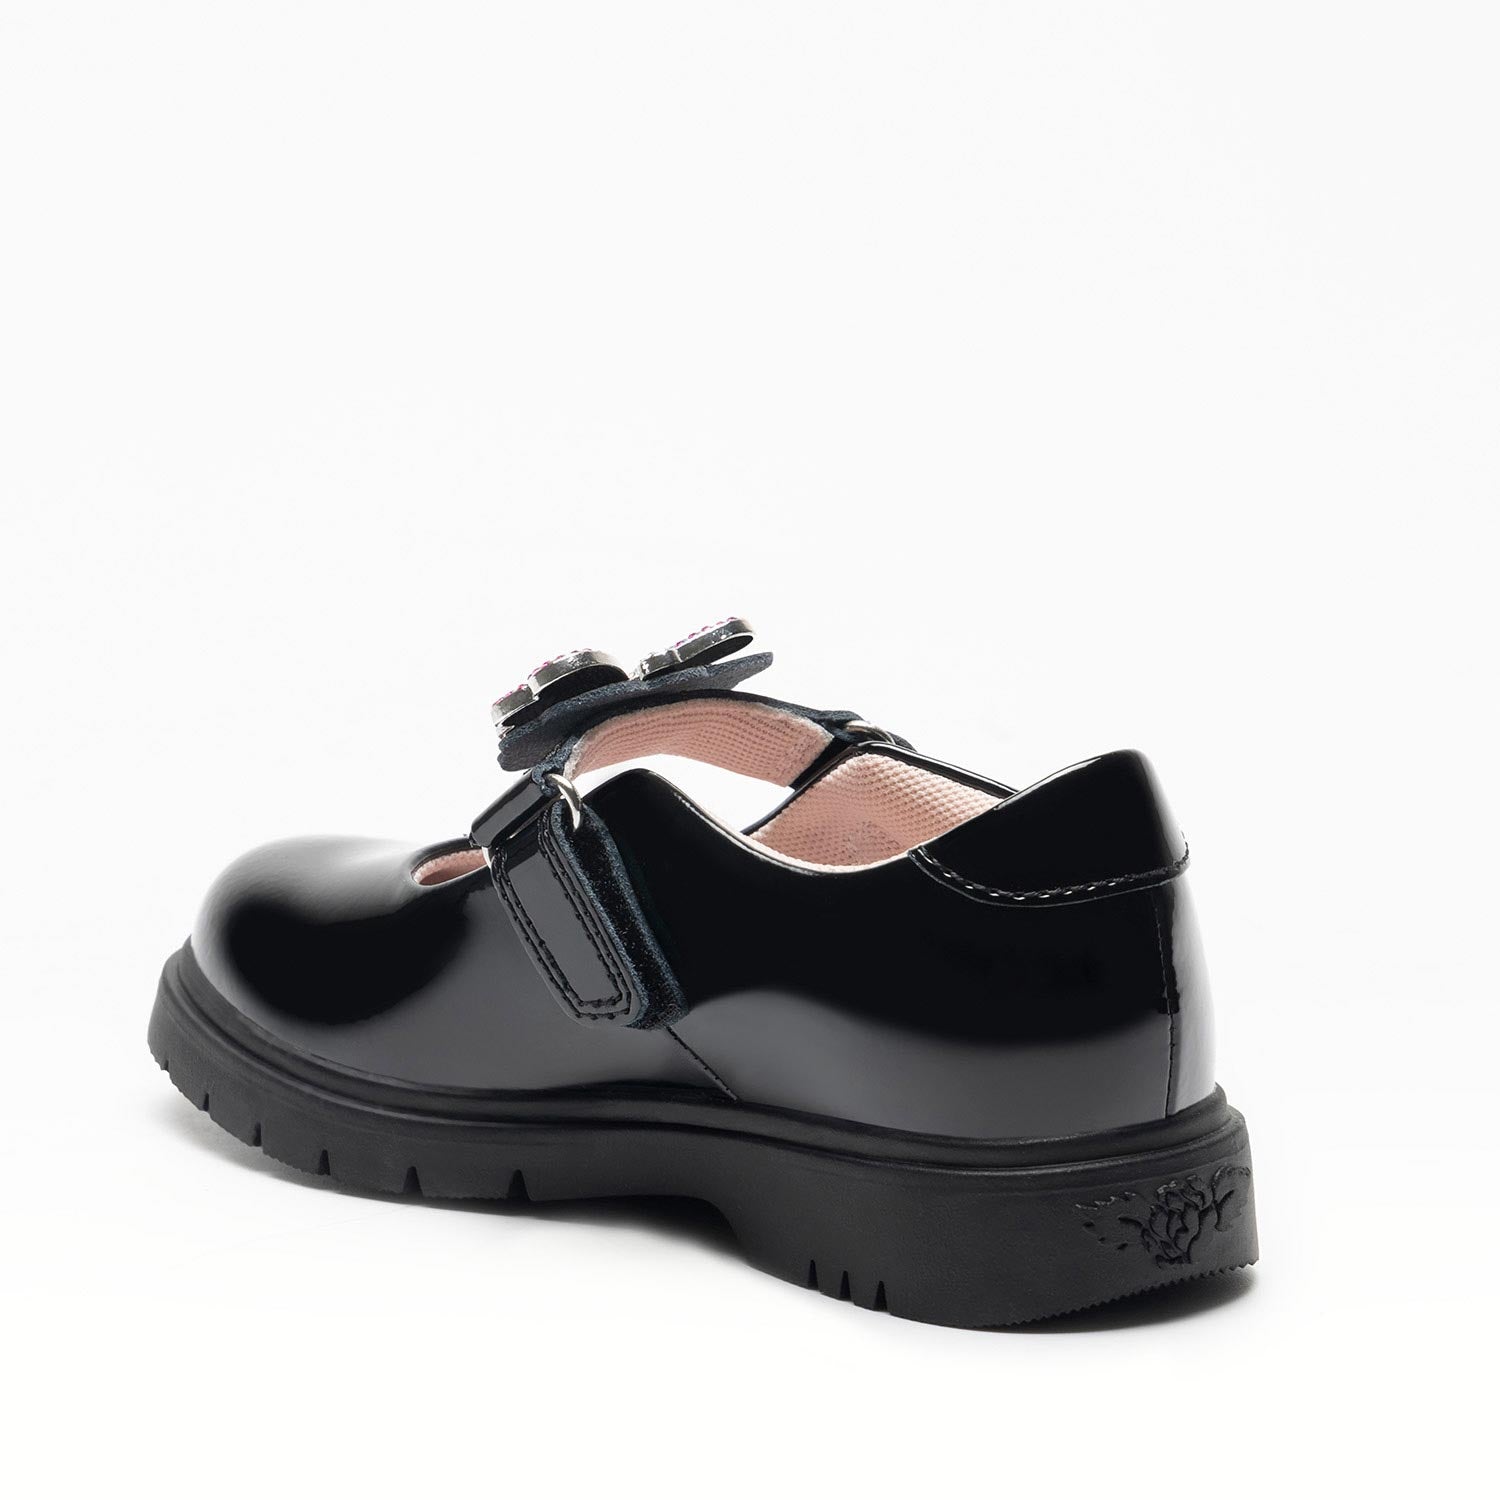 Lelli Kelly Luna 3 Butterfly Black Patent Girls School Shoes